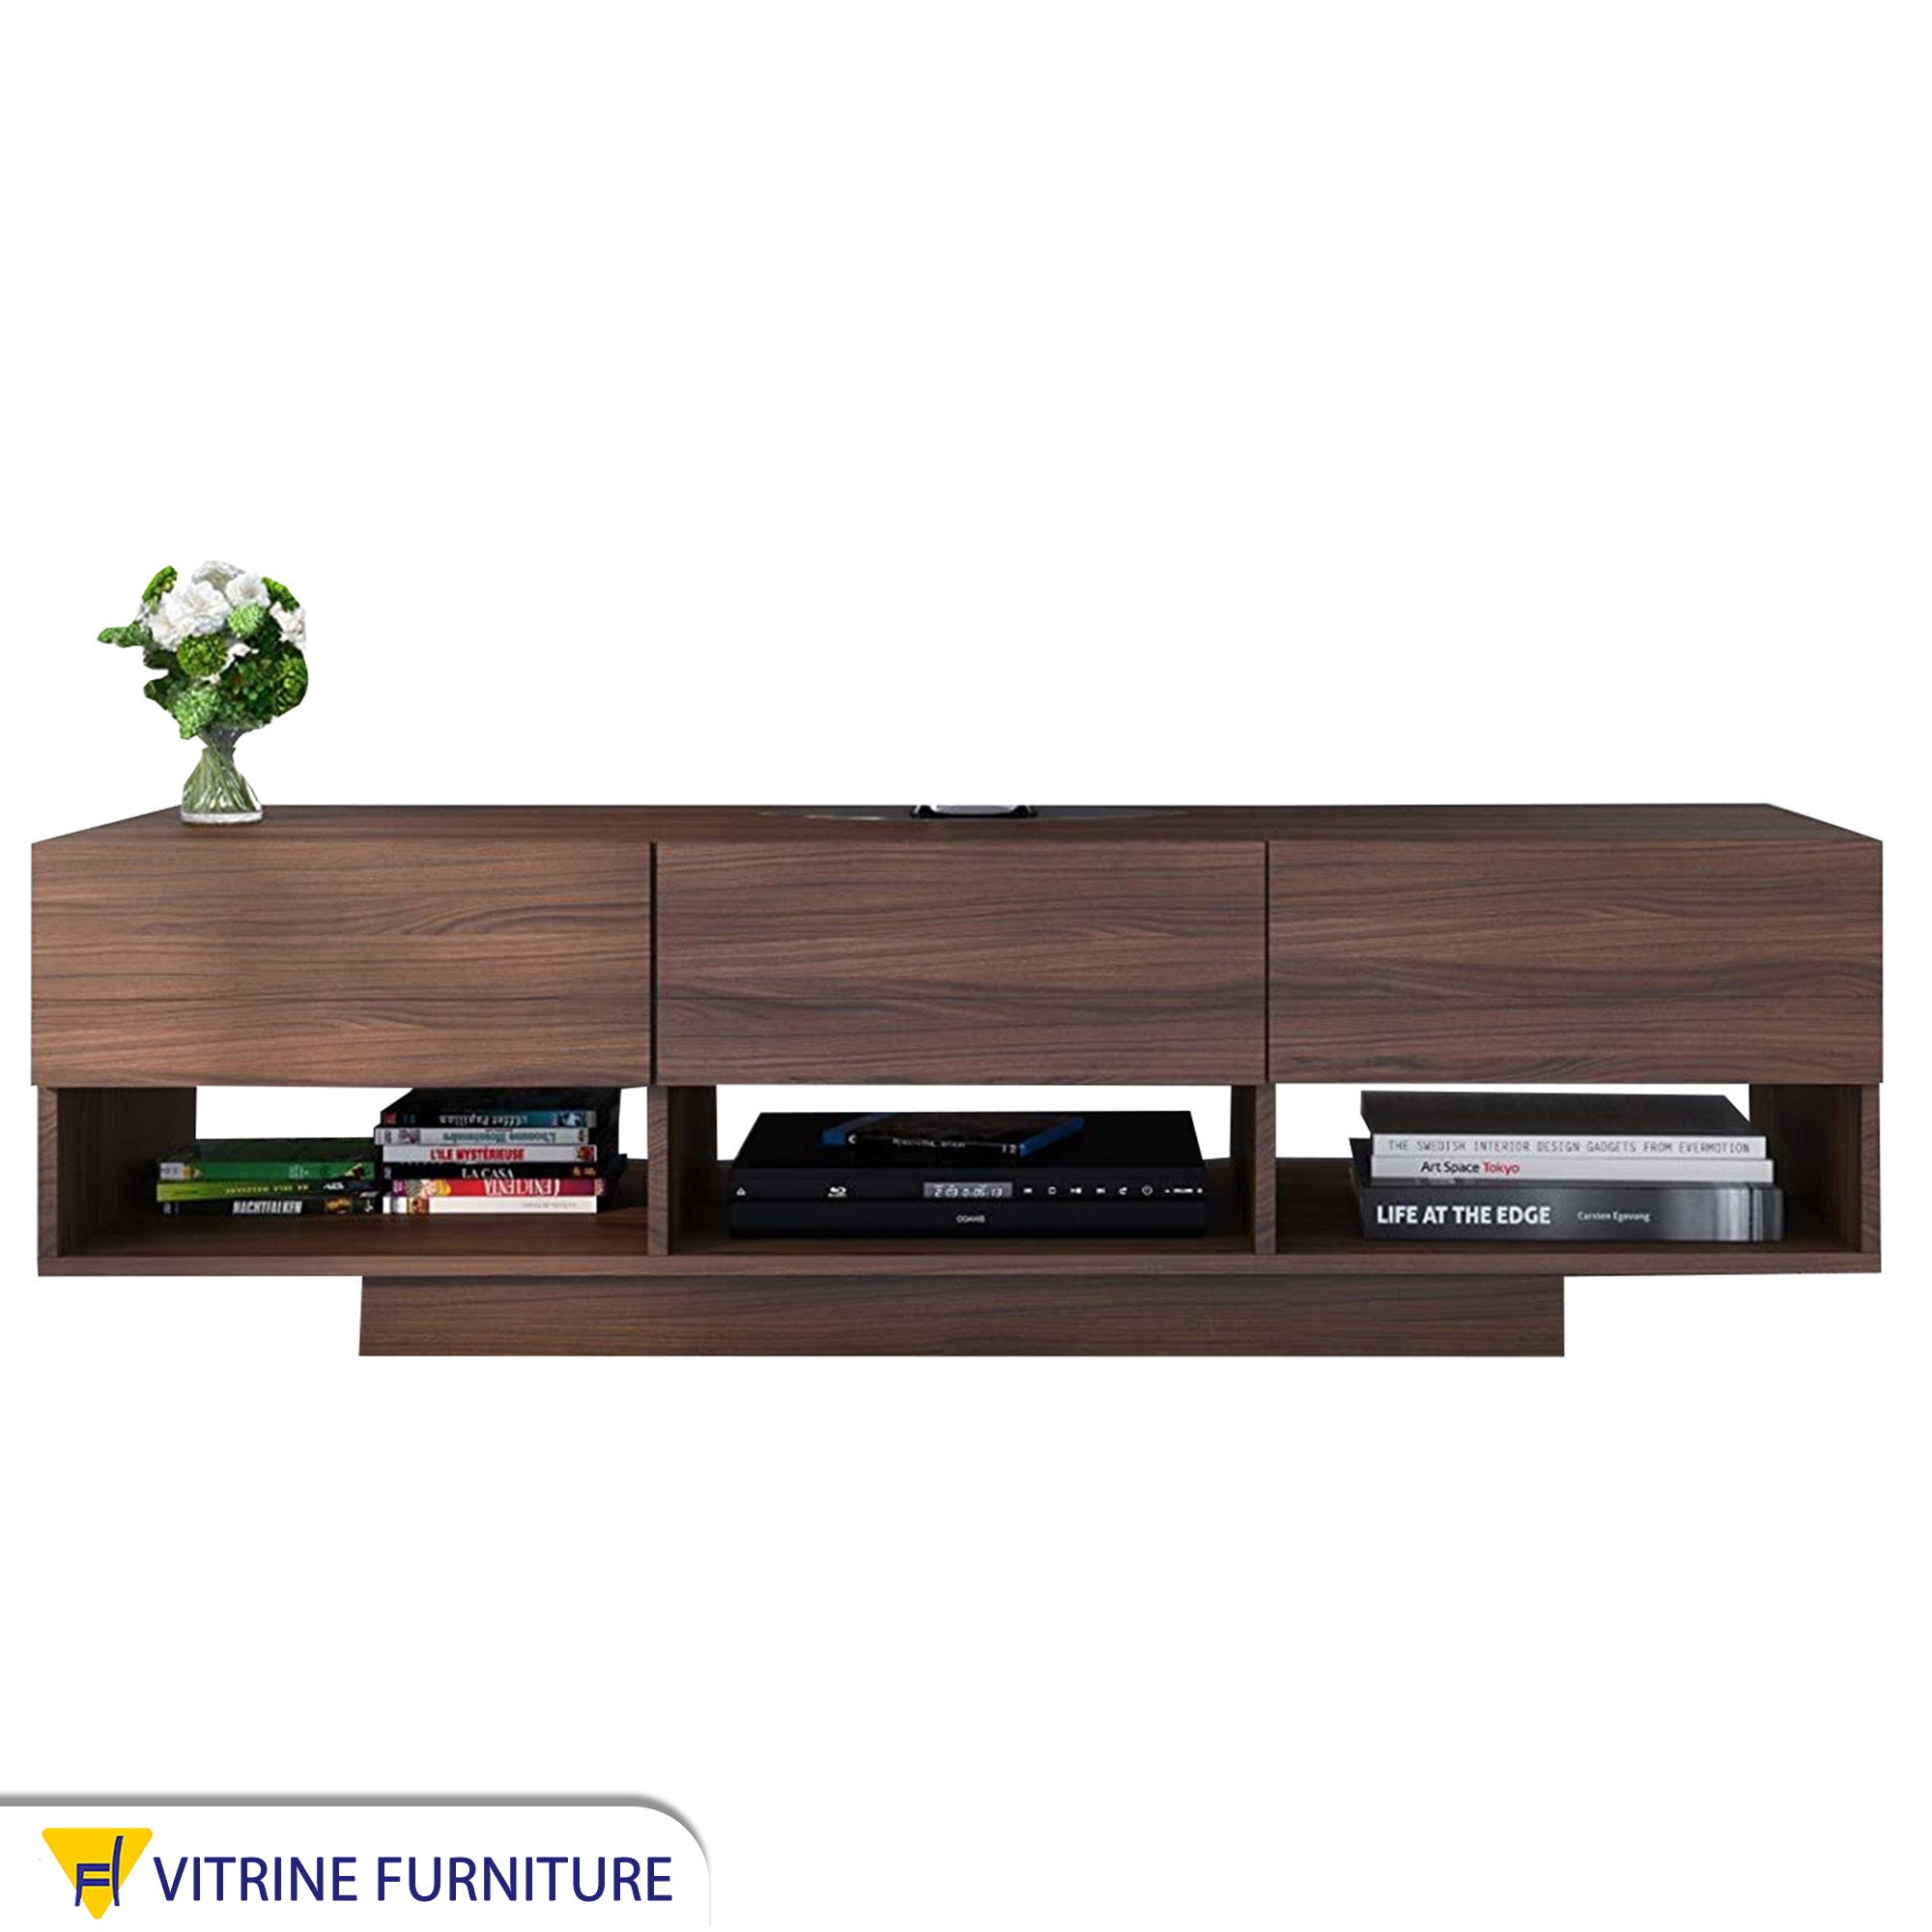 Dark brown wooden TV unit